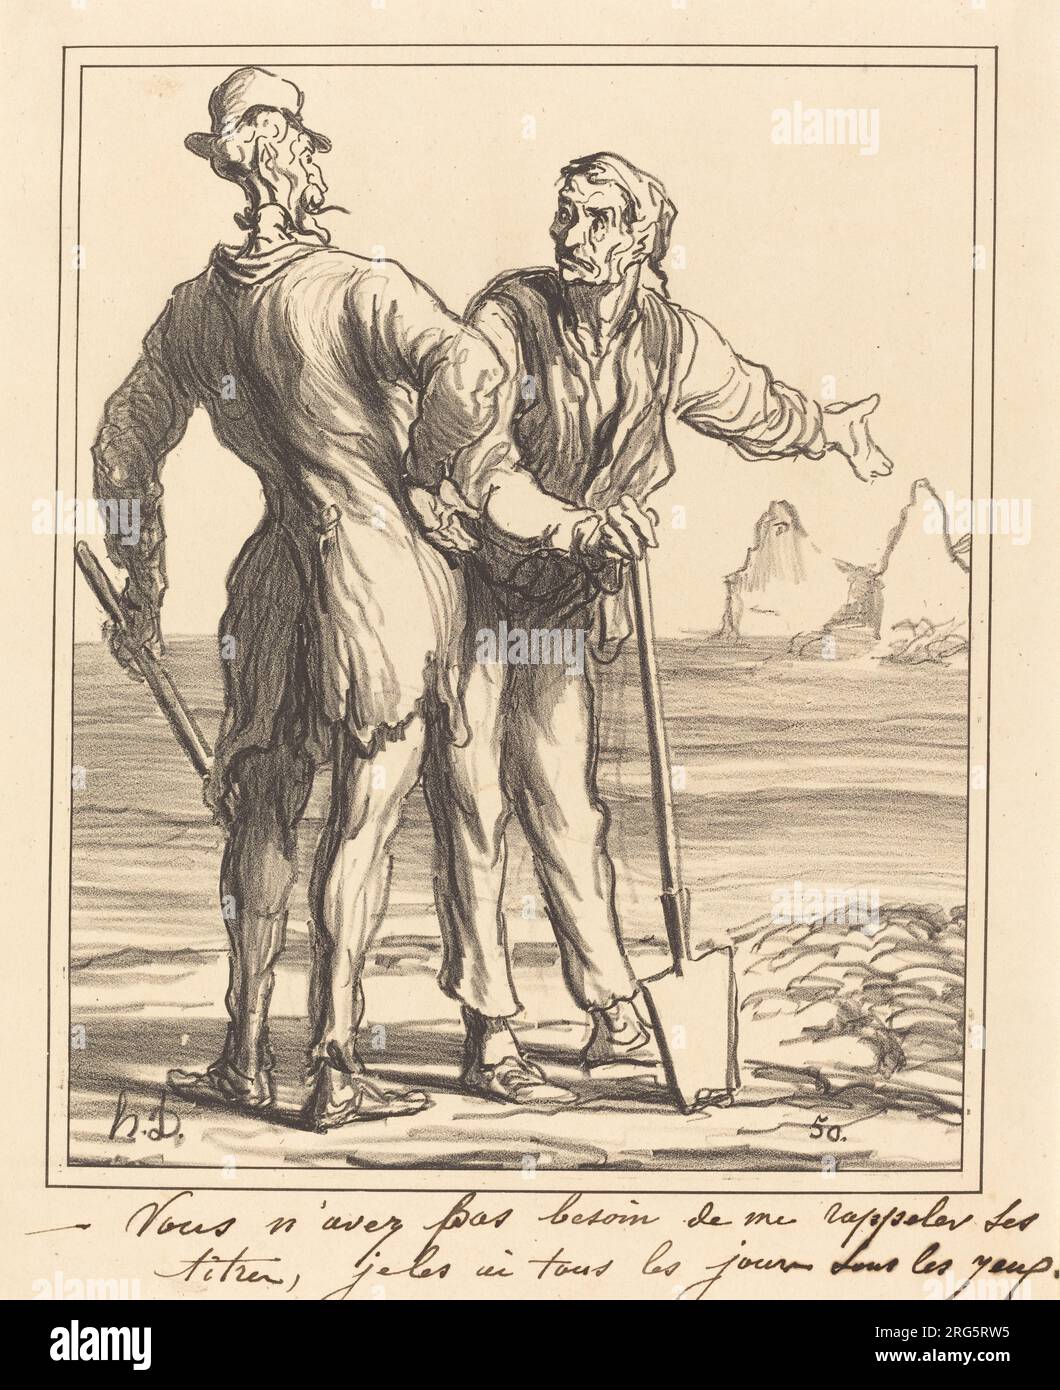 Vous n'avez pas besoin de me Rappeler ses titres... 1871 von Honoré Daumier Stockfoto